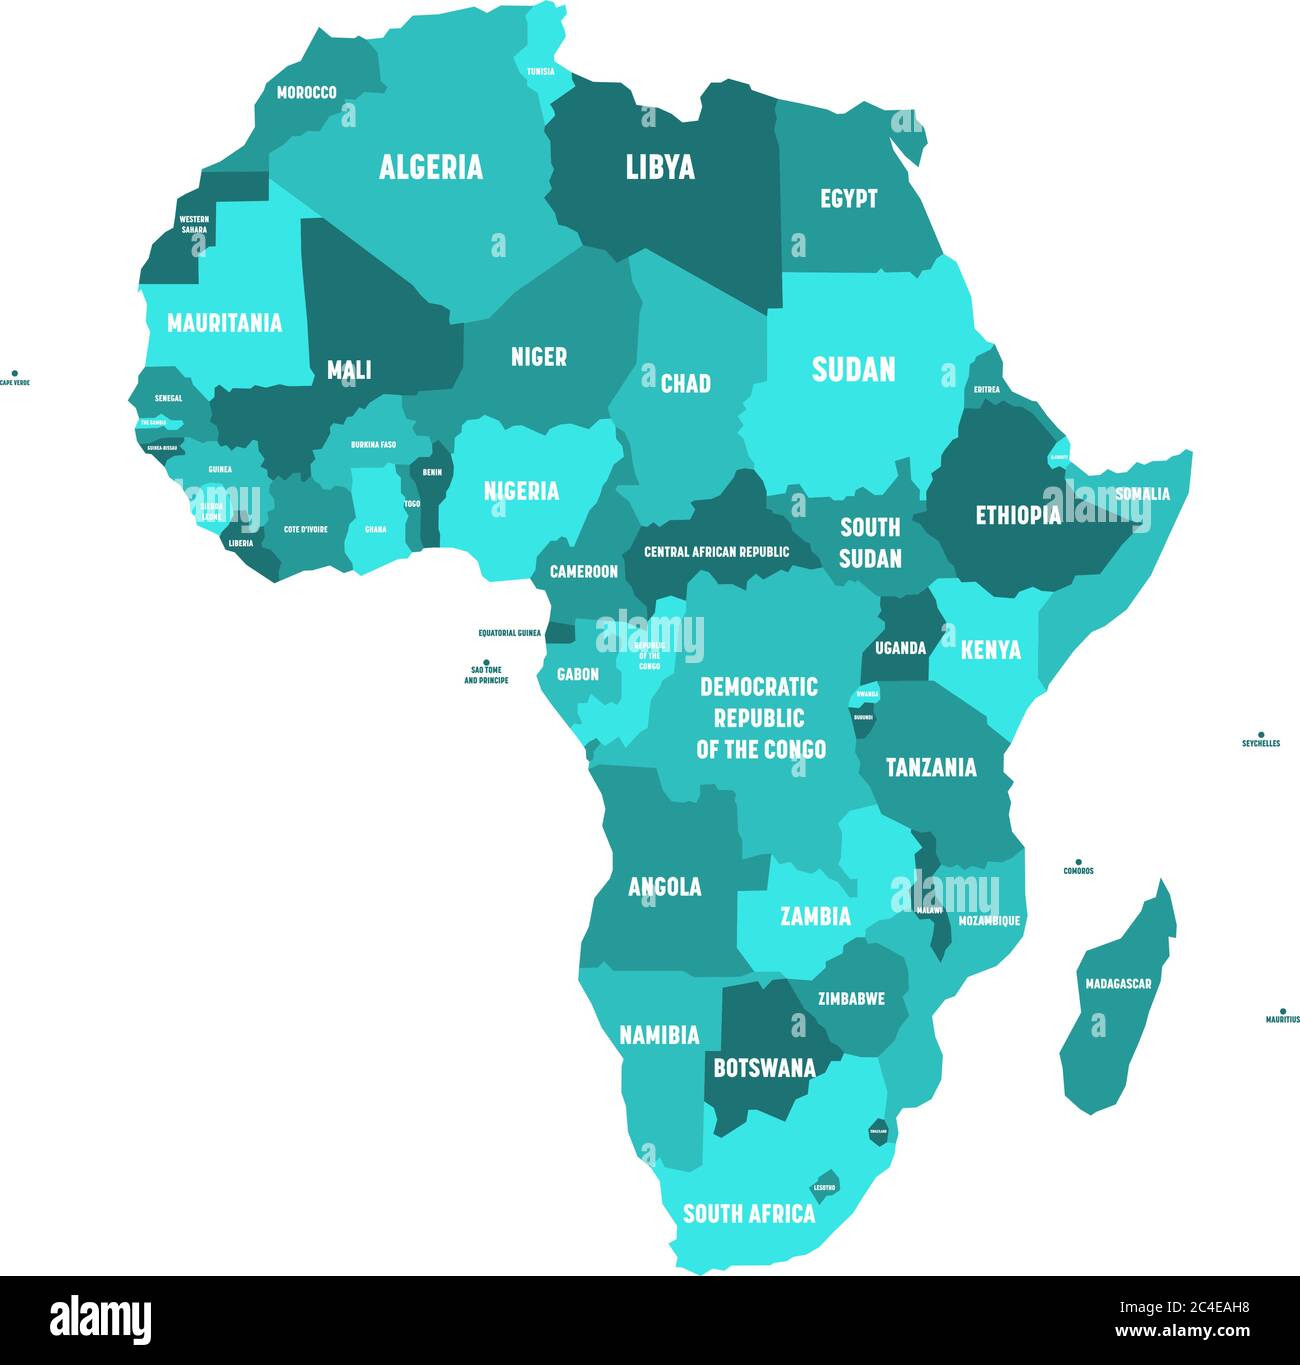 Mappa politica dell'Africa in quattro tonalità di blu turchese con etichette bianche su sfondo bianco. Illustrazione vettoriale. Illustrazione Vettoriale